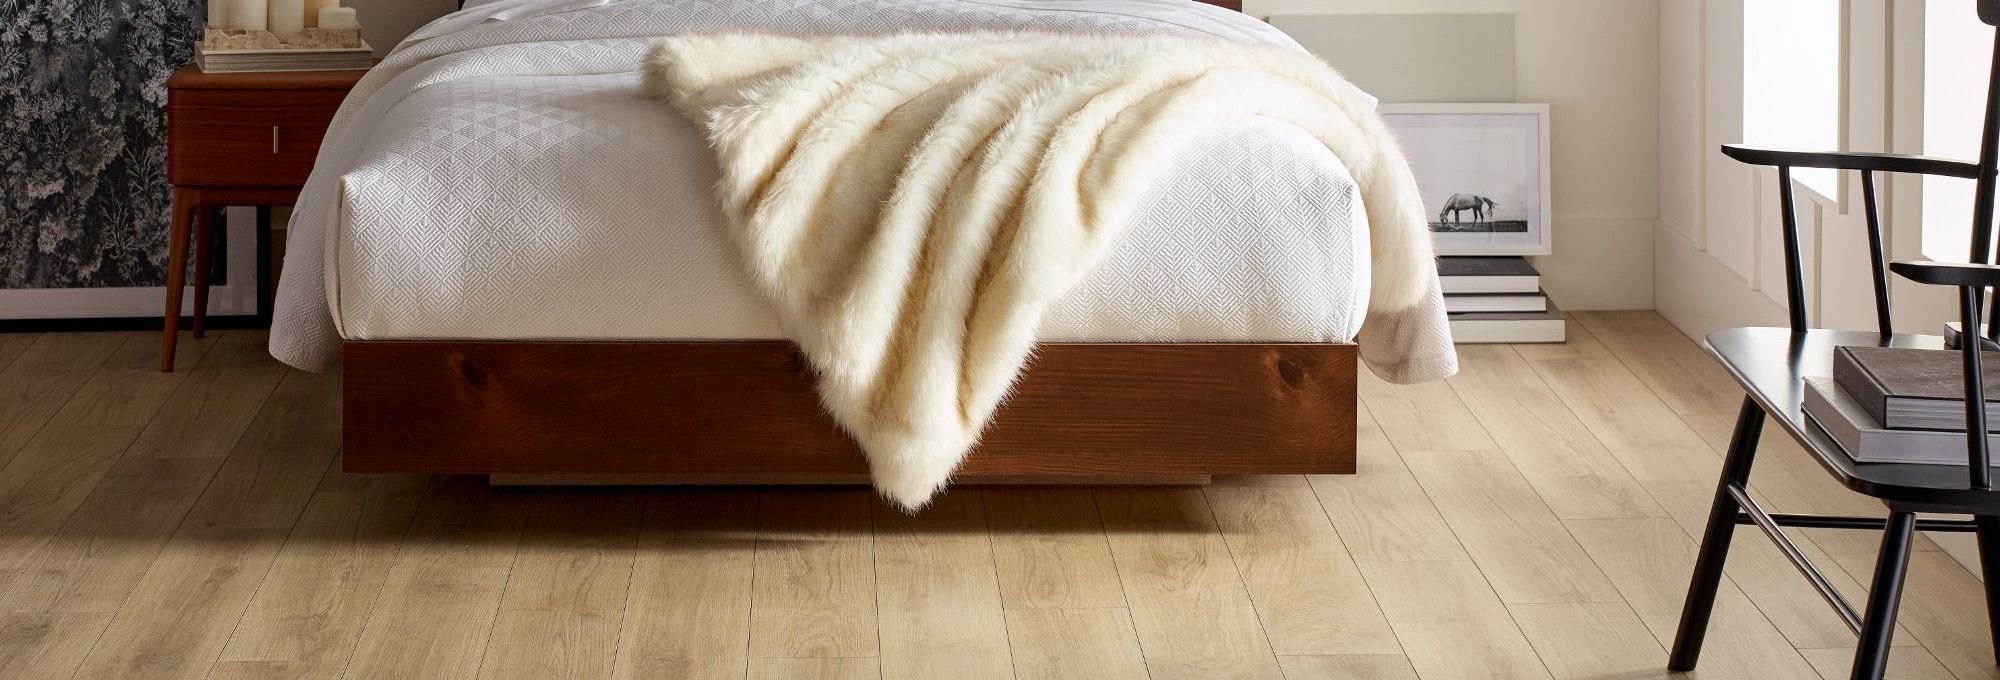 Bedroom with wood-look luxury vinyl flooring from Poway Carpets in Poway, CA